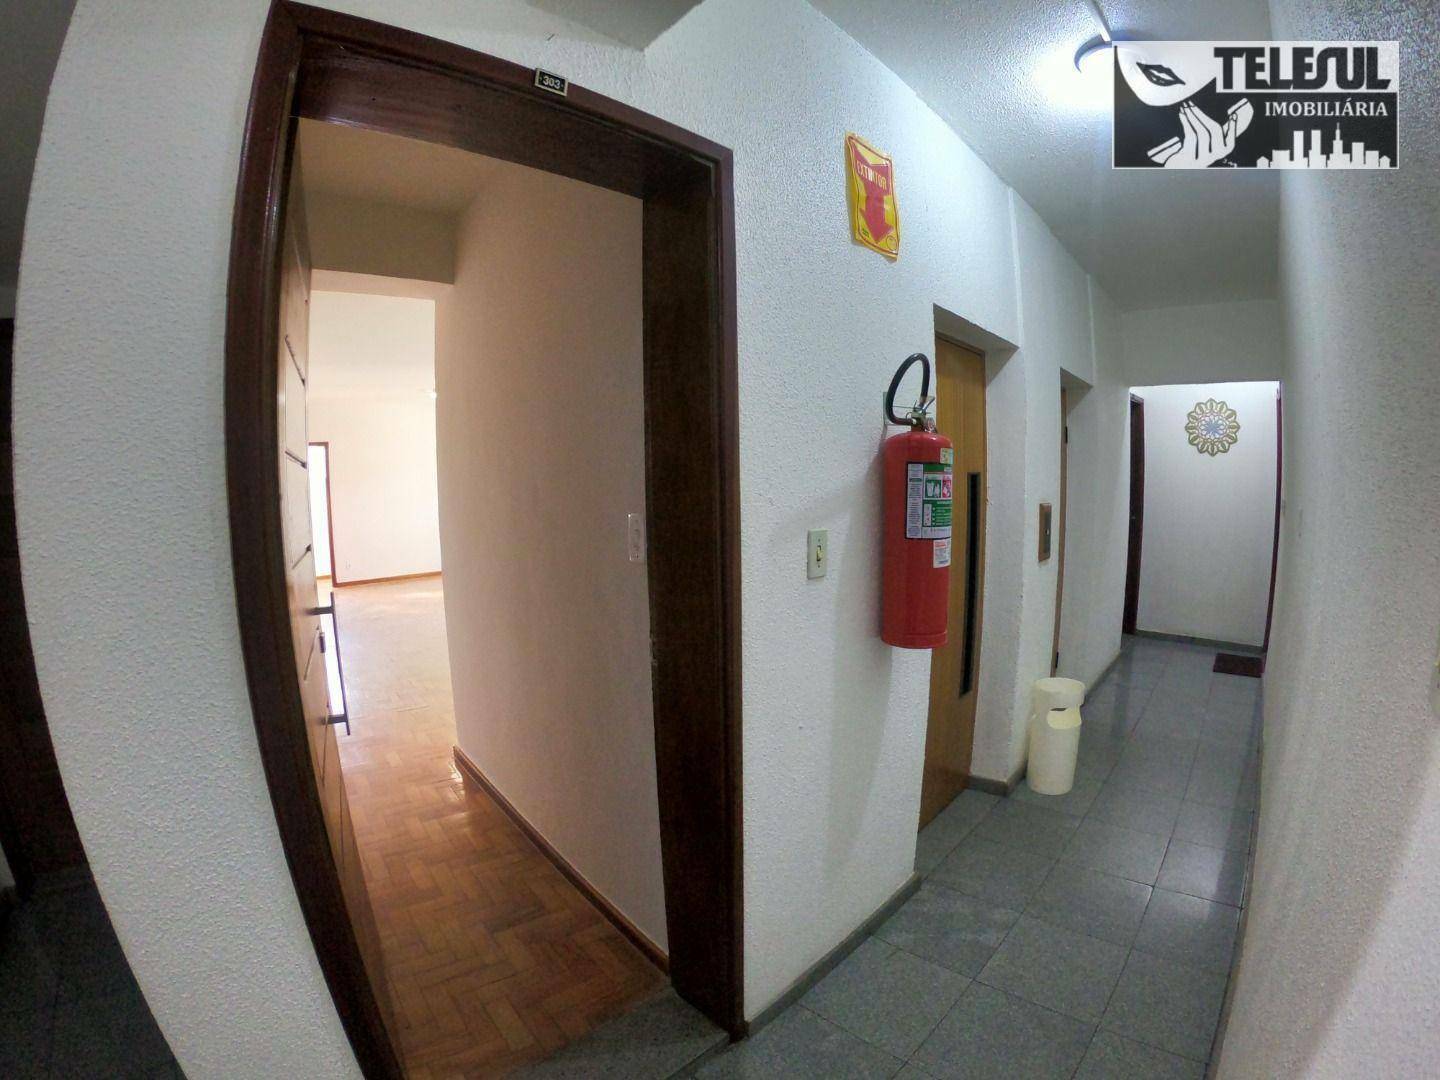 Apartamento, 3 quartos - Foto 3